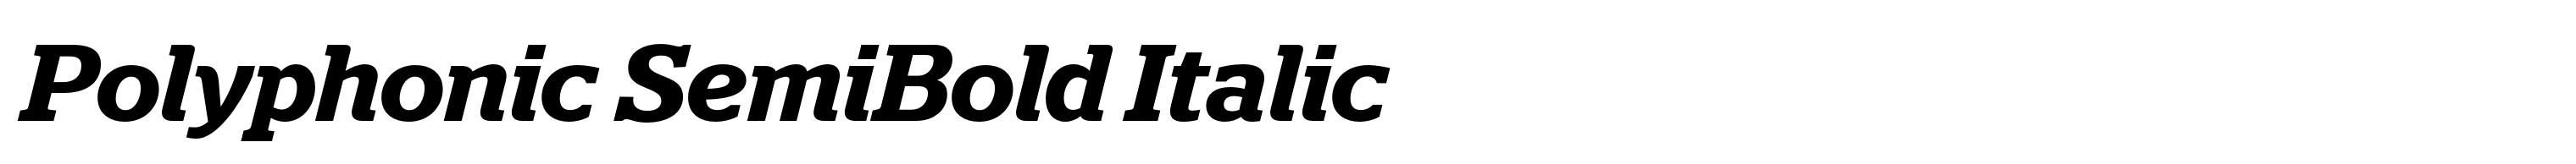 Polyphonic SemiBold Italic